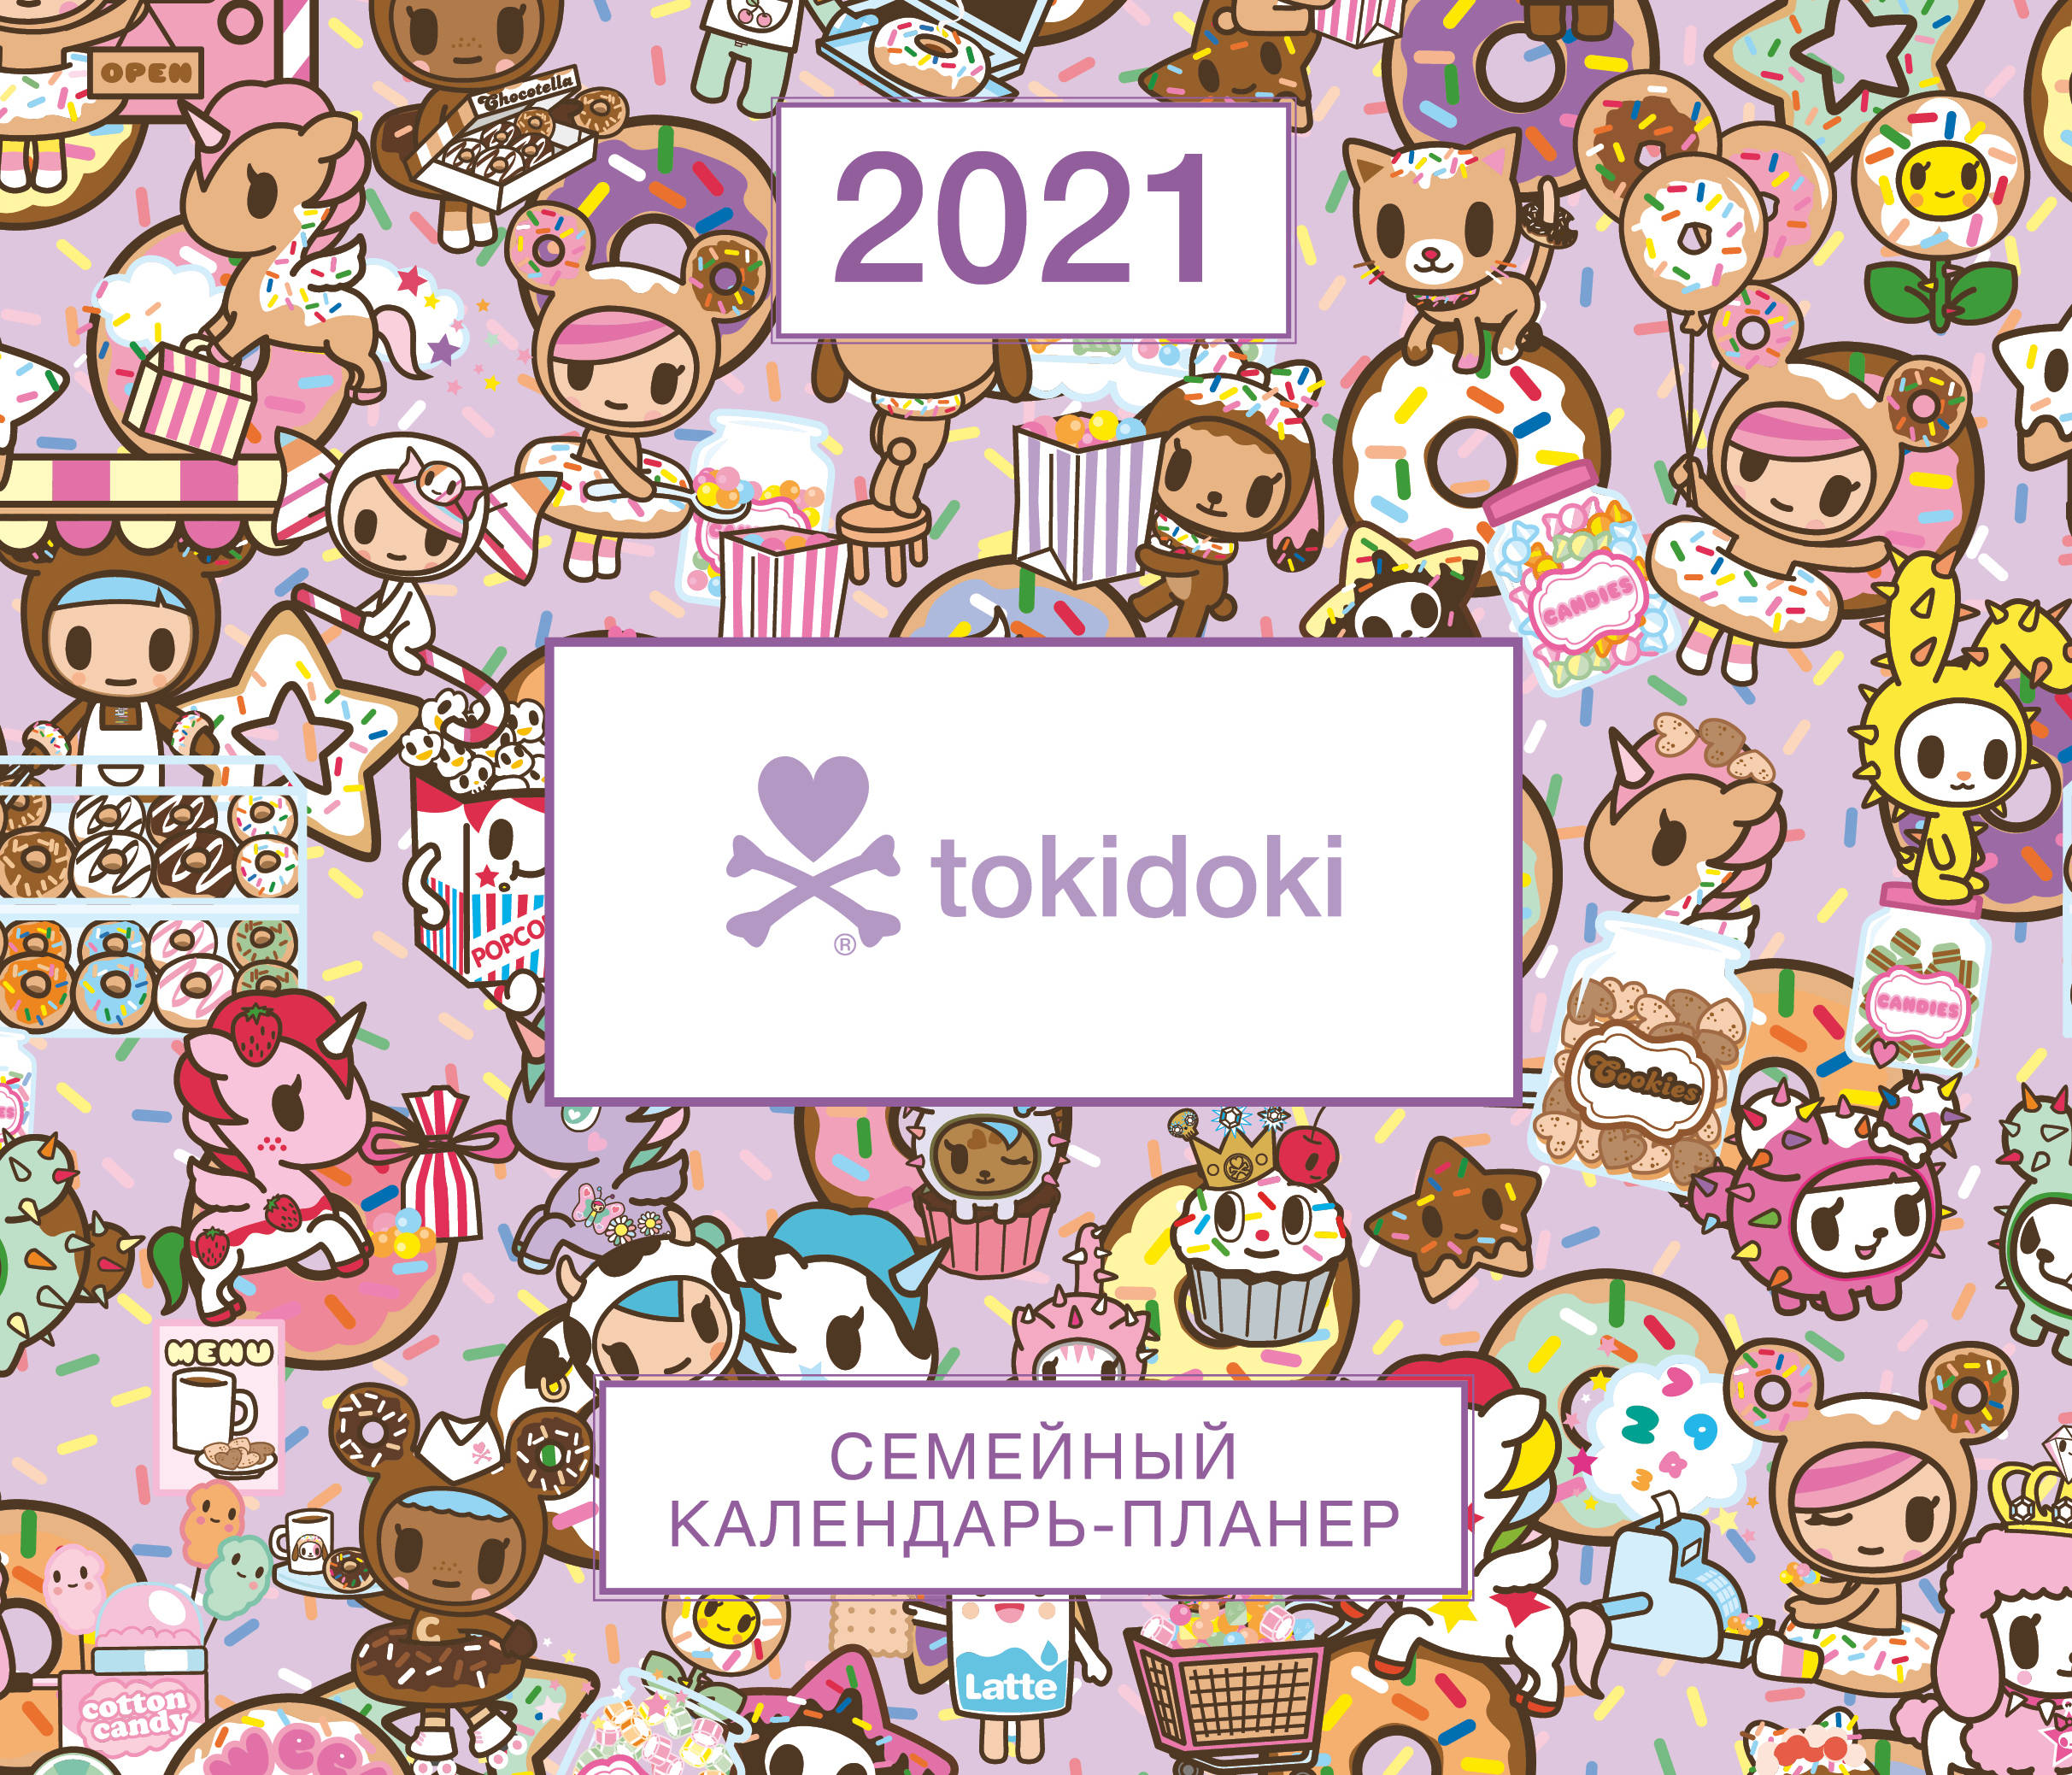  tokidoki.  -  2021  (245280 ) 